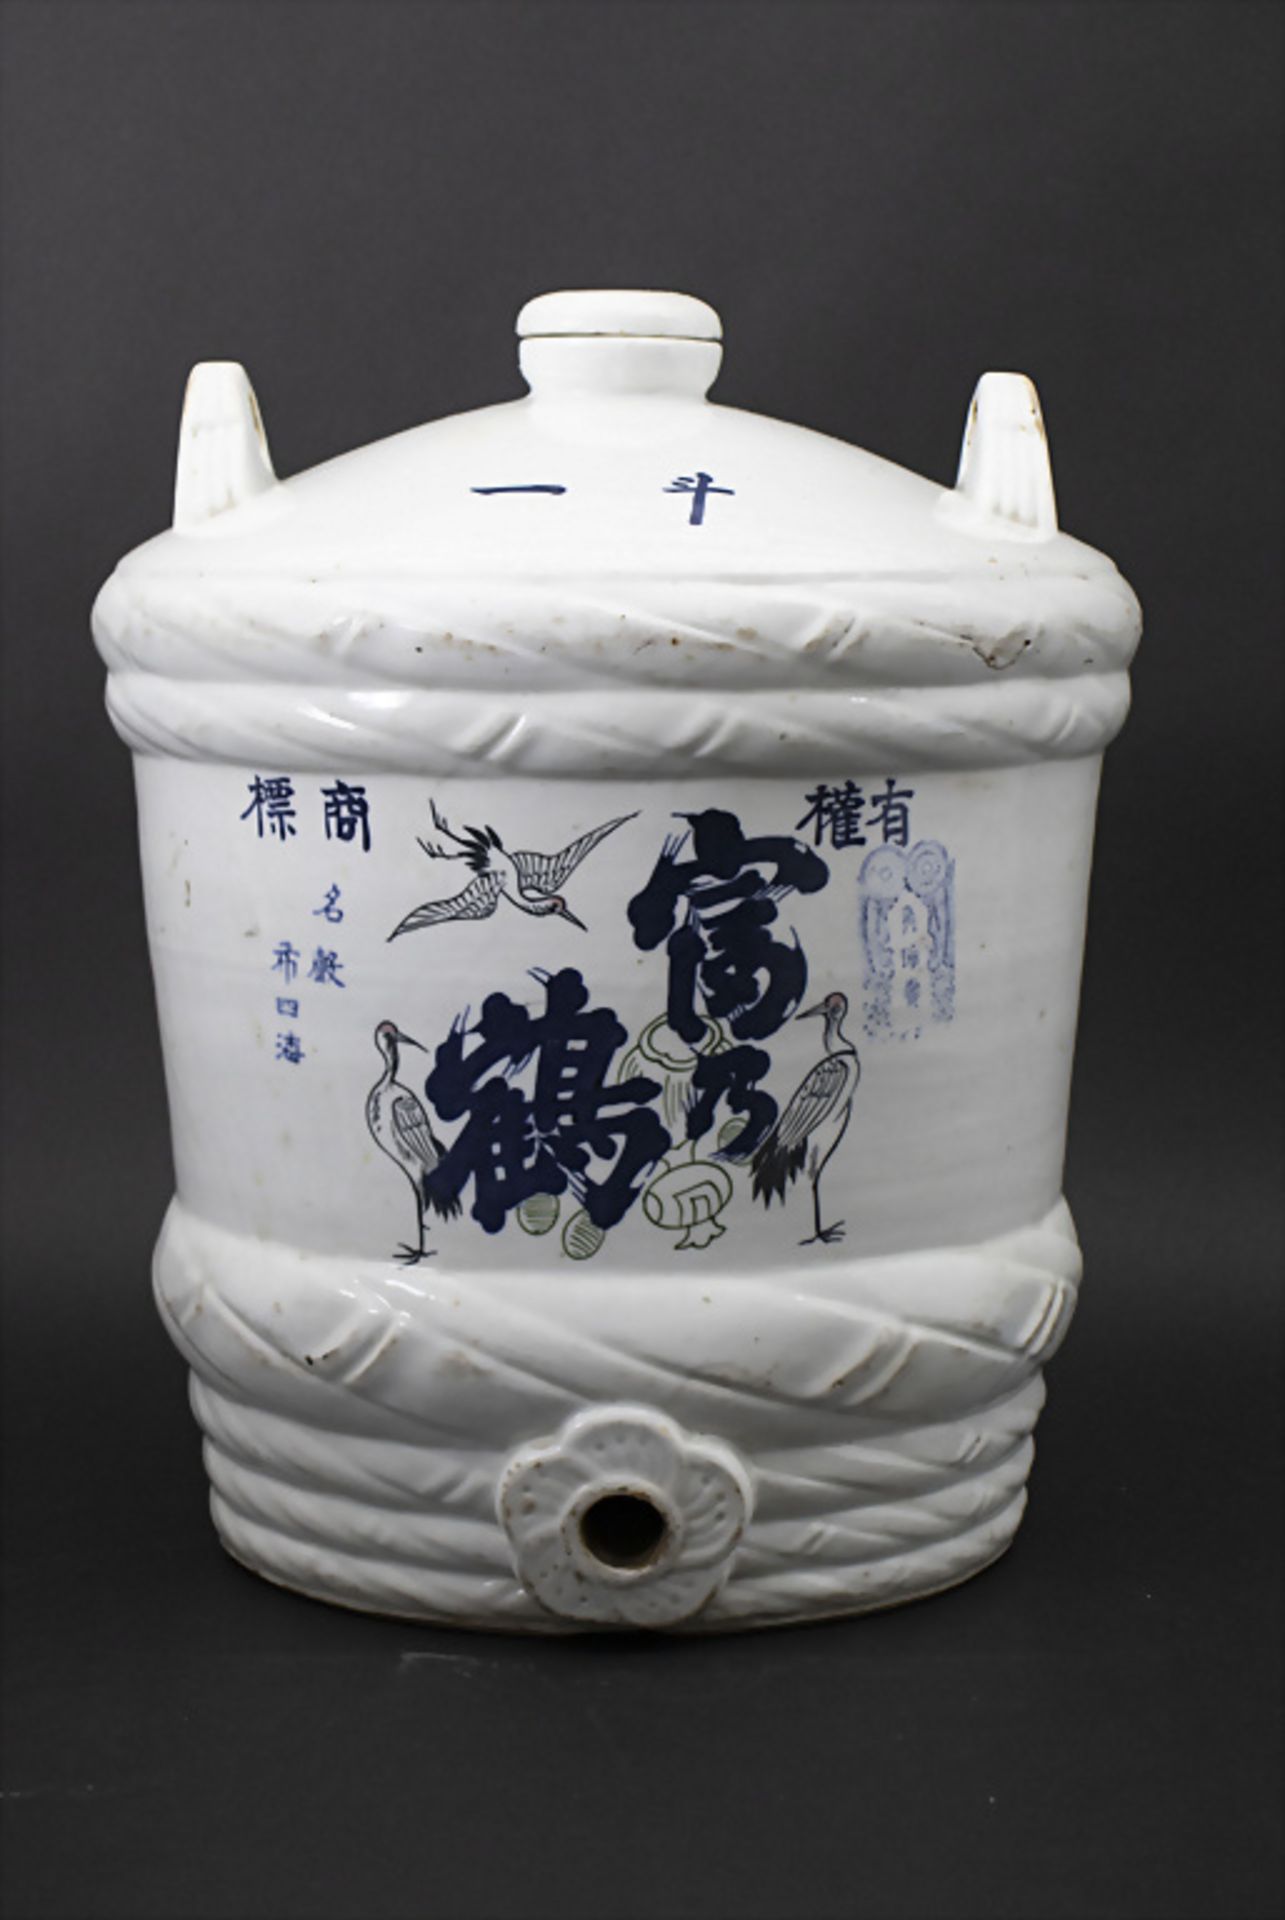 Sake-Behälter / Sake-Fass / A sake barrel, Japan, um 1900